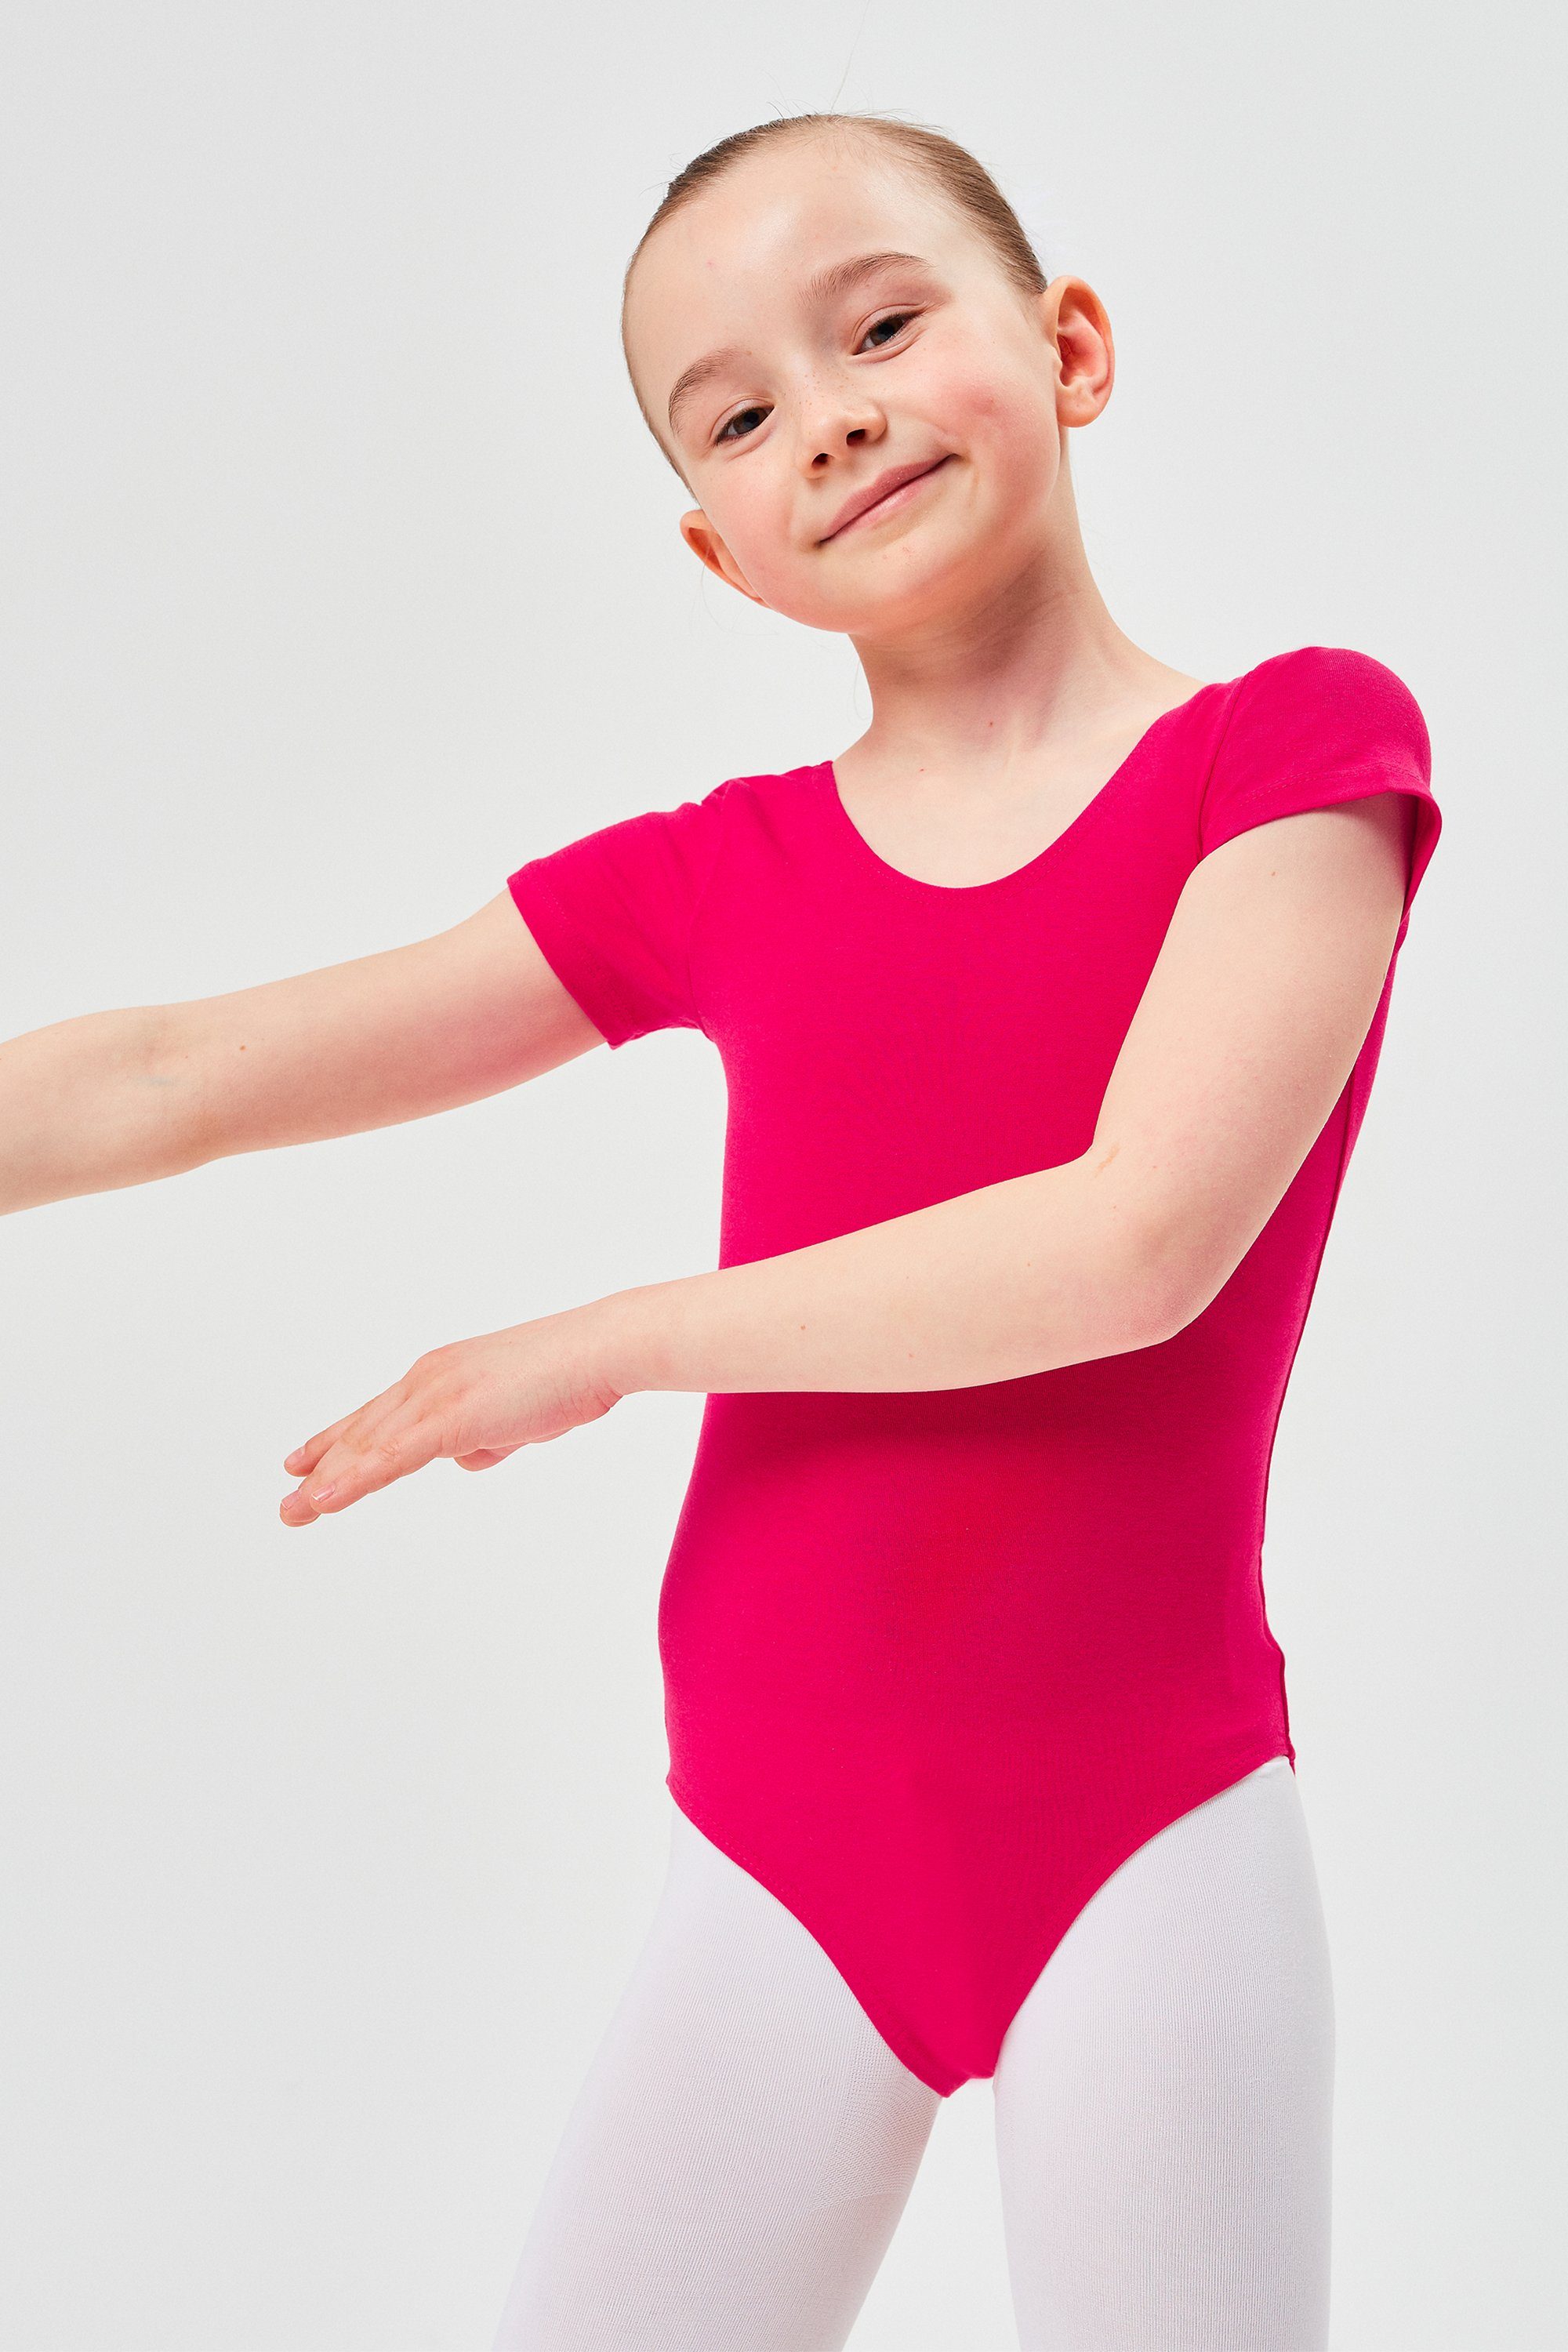 tanzmuster Body Ballettbody Sally aus weicher Baumwolle Kurzarm Trikot fürs Kinder Ballett pink